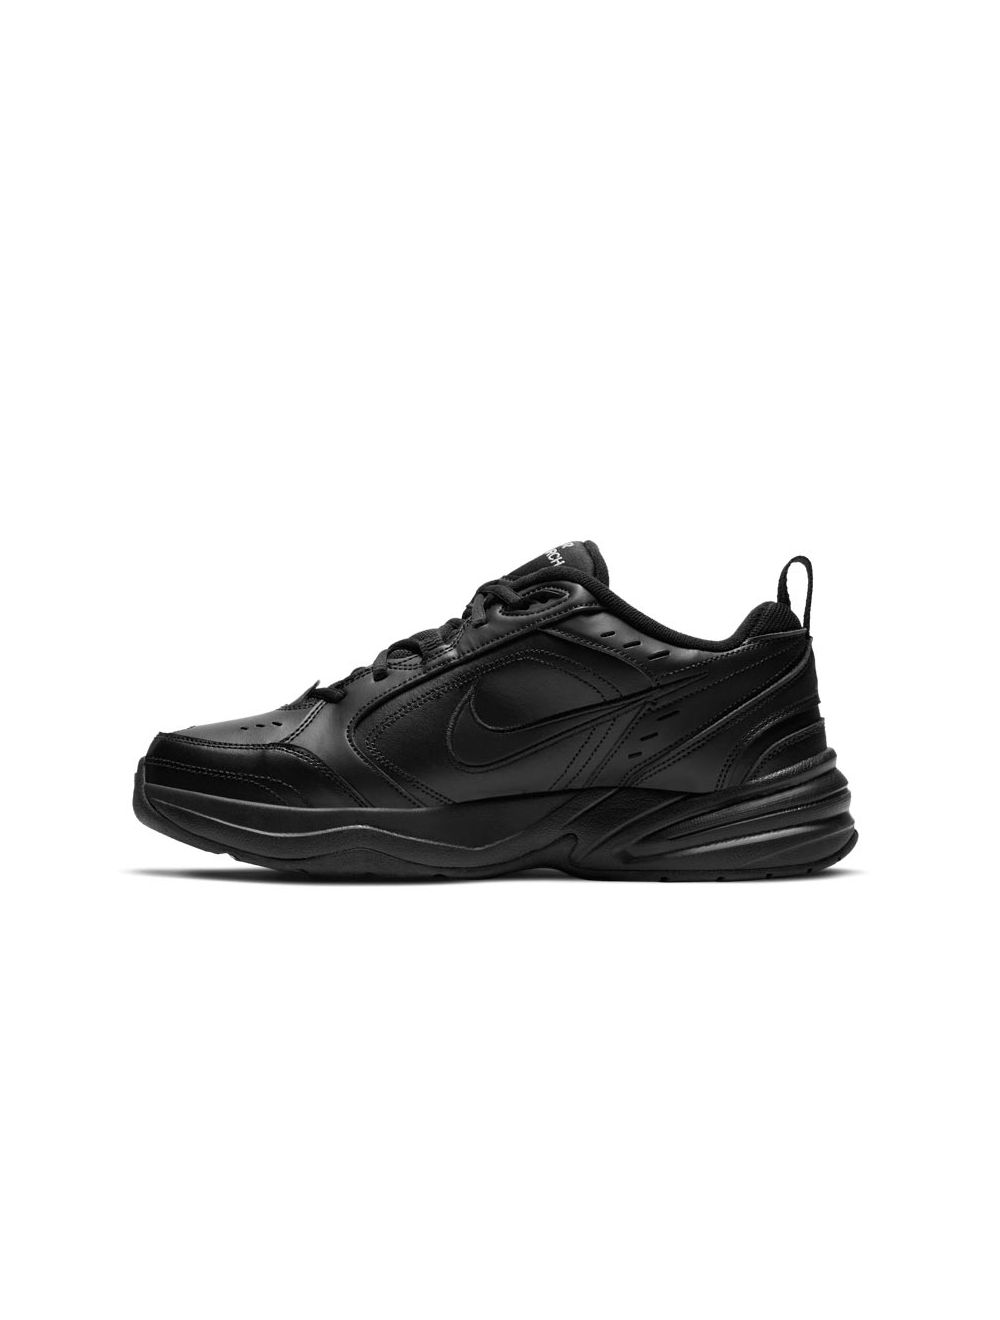 Shop Nike Air Monarch IV Mens Training Shoes Black | Studio 88